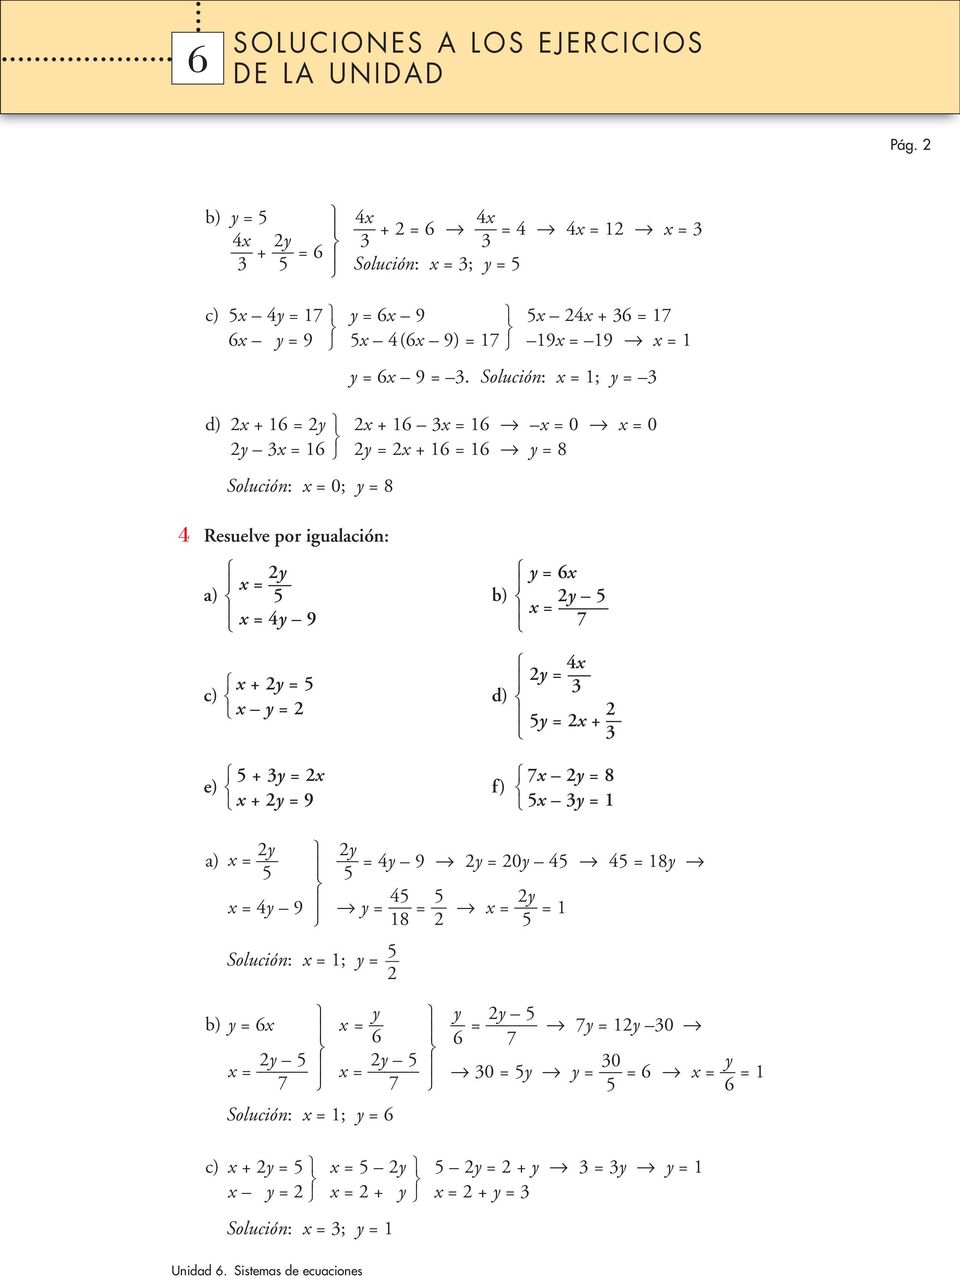 y Solución: ; y 6 y y 5 7y y 0 6 7 0 y 0 5y y 6 5 6 c) + y 5 y 5 y + y 5 y + y y y + y Solución: ; y 6 Pág.